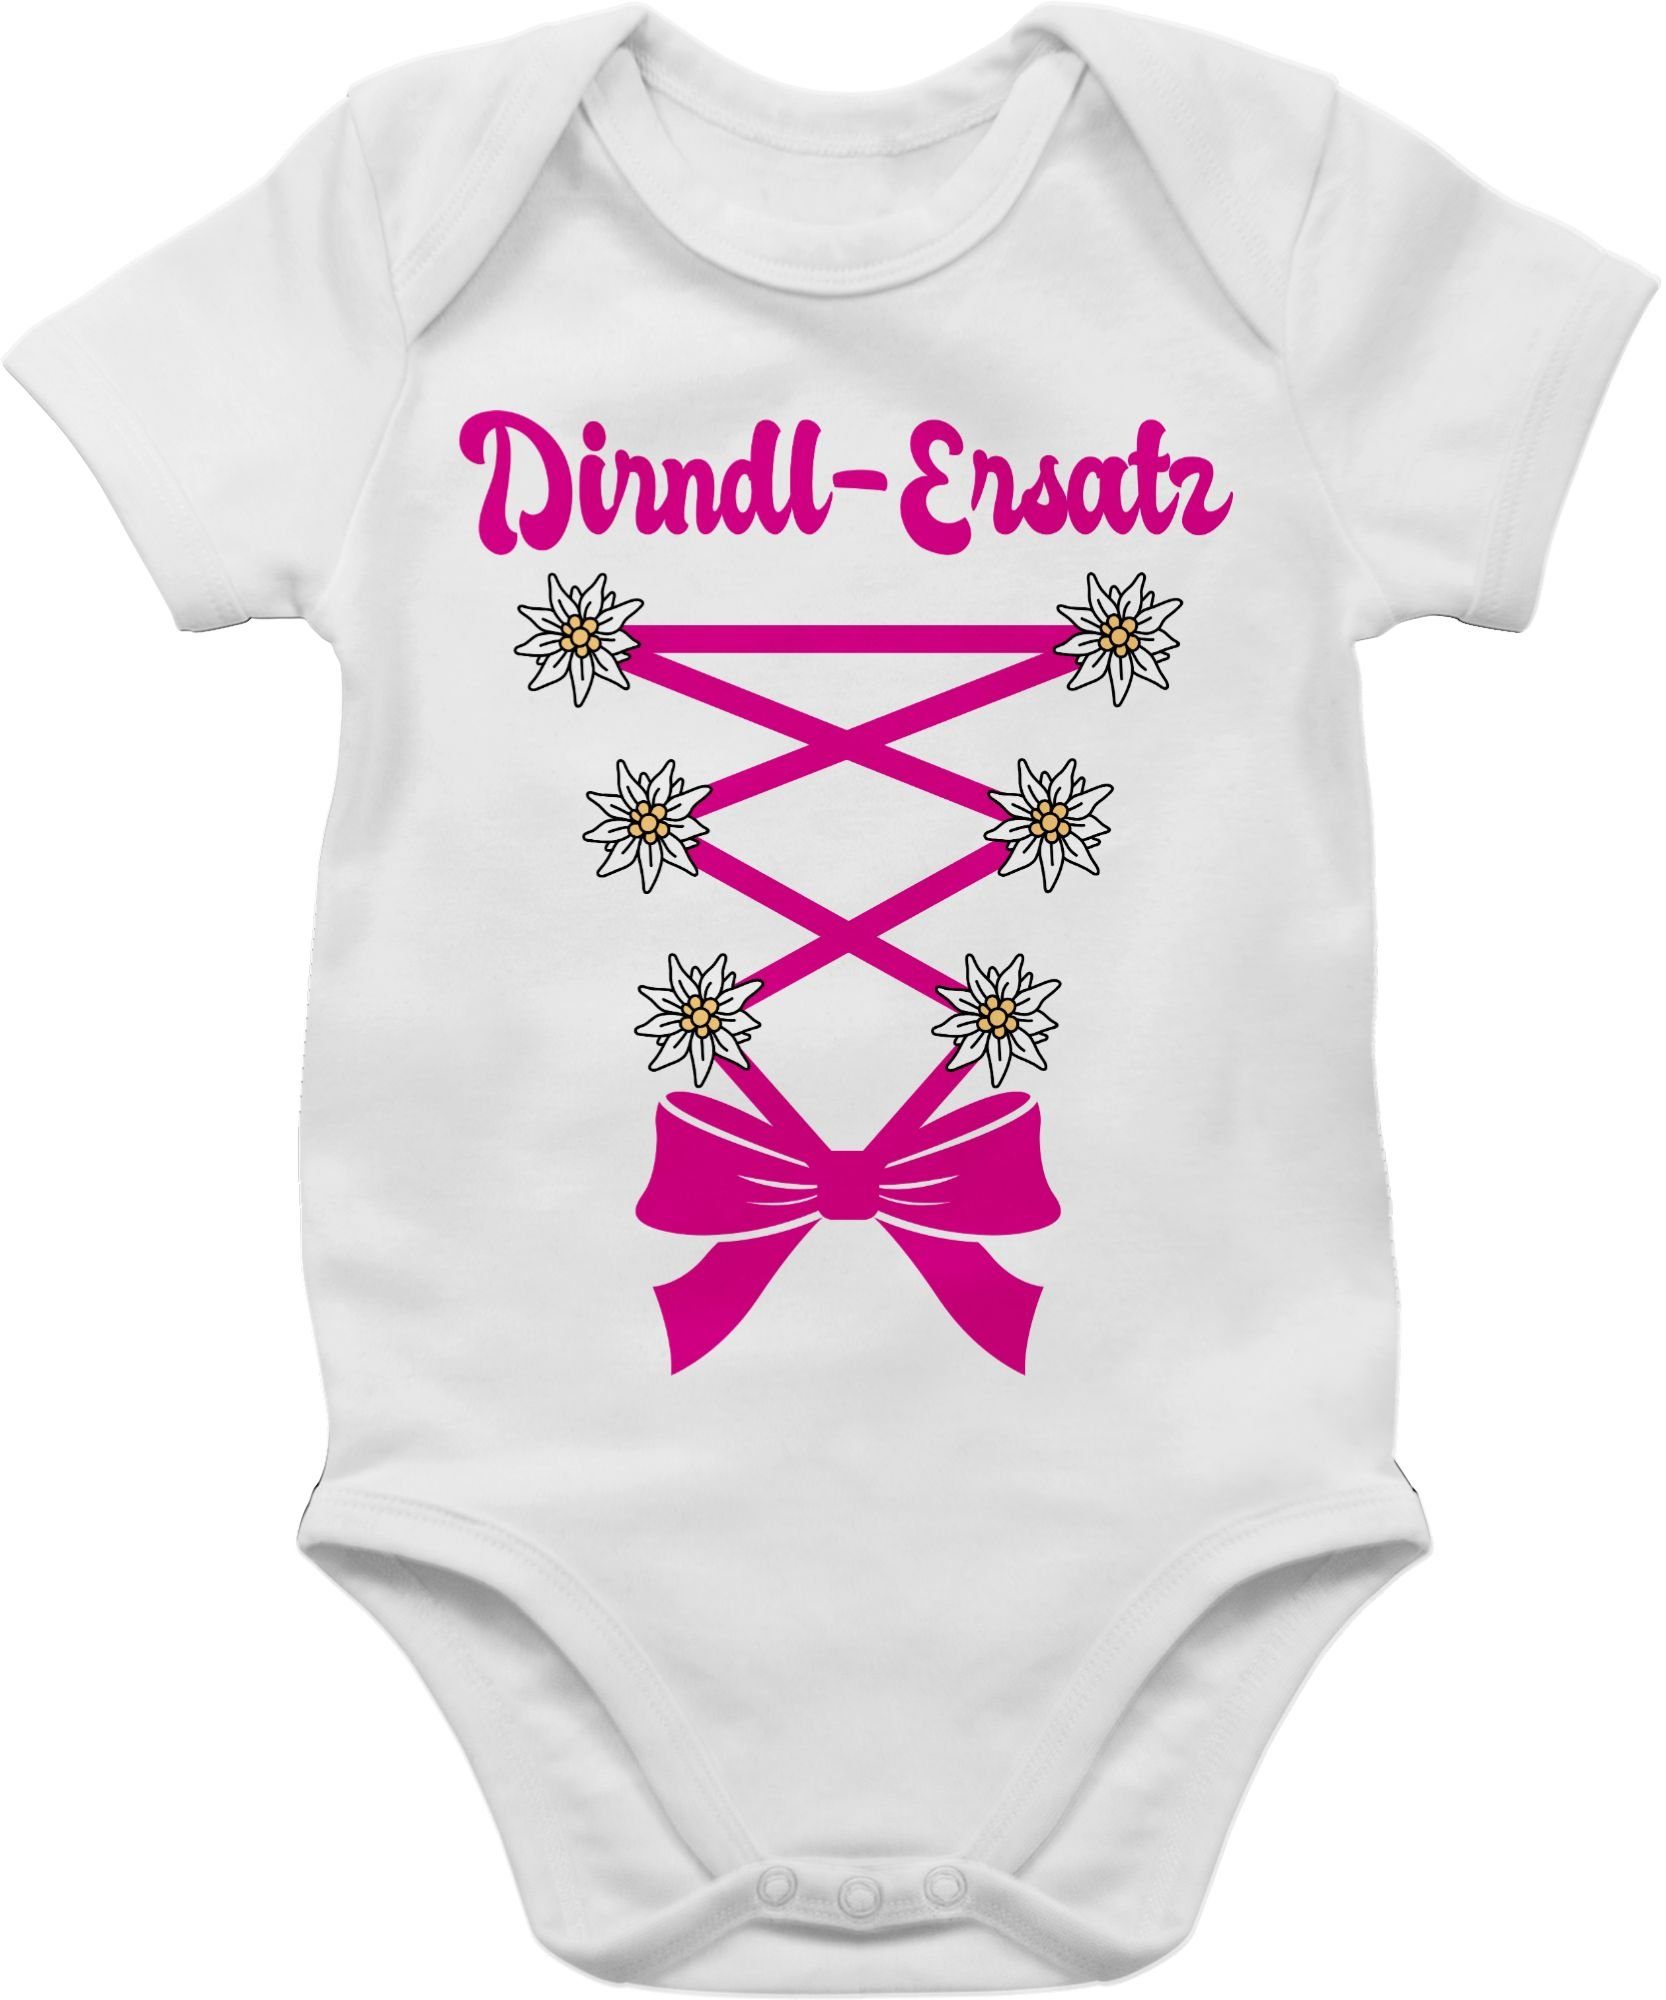 Baby 1 für fuchsia Korsage Weiß Oktoberfest Shirtbody Outfit Dirndl-Ersatz Mode - Shirtracer